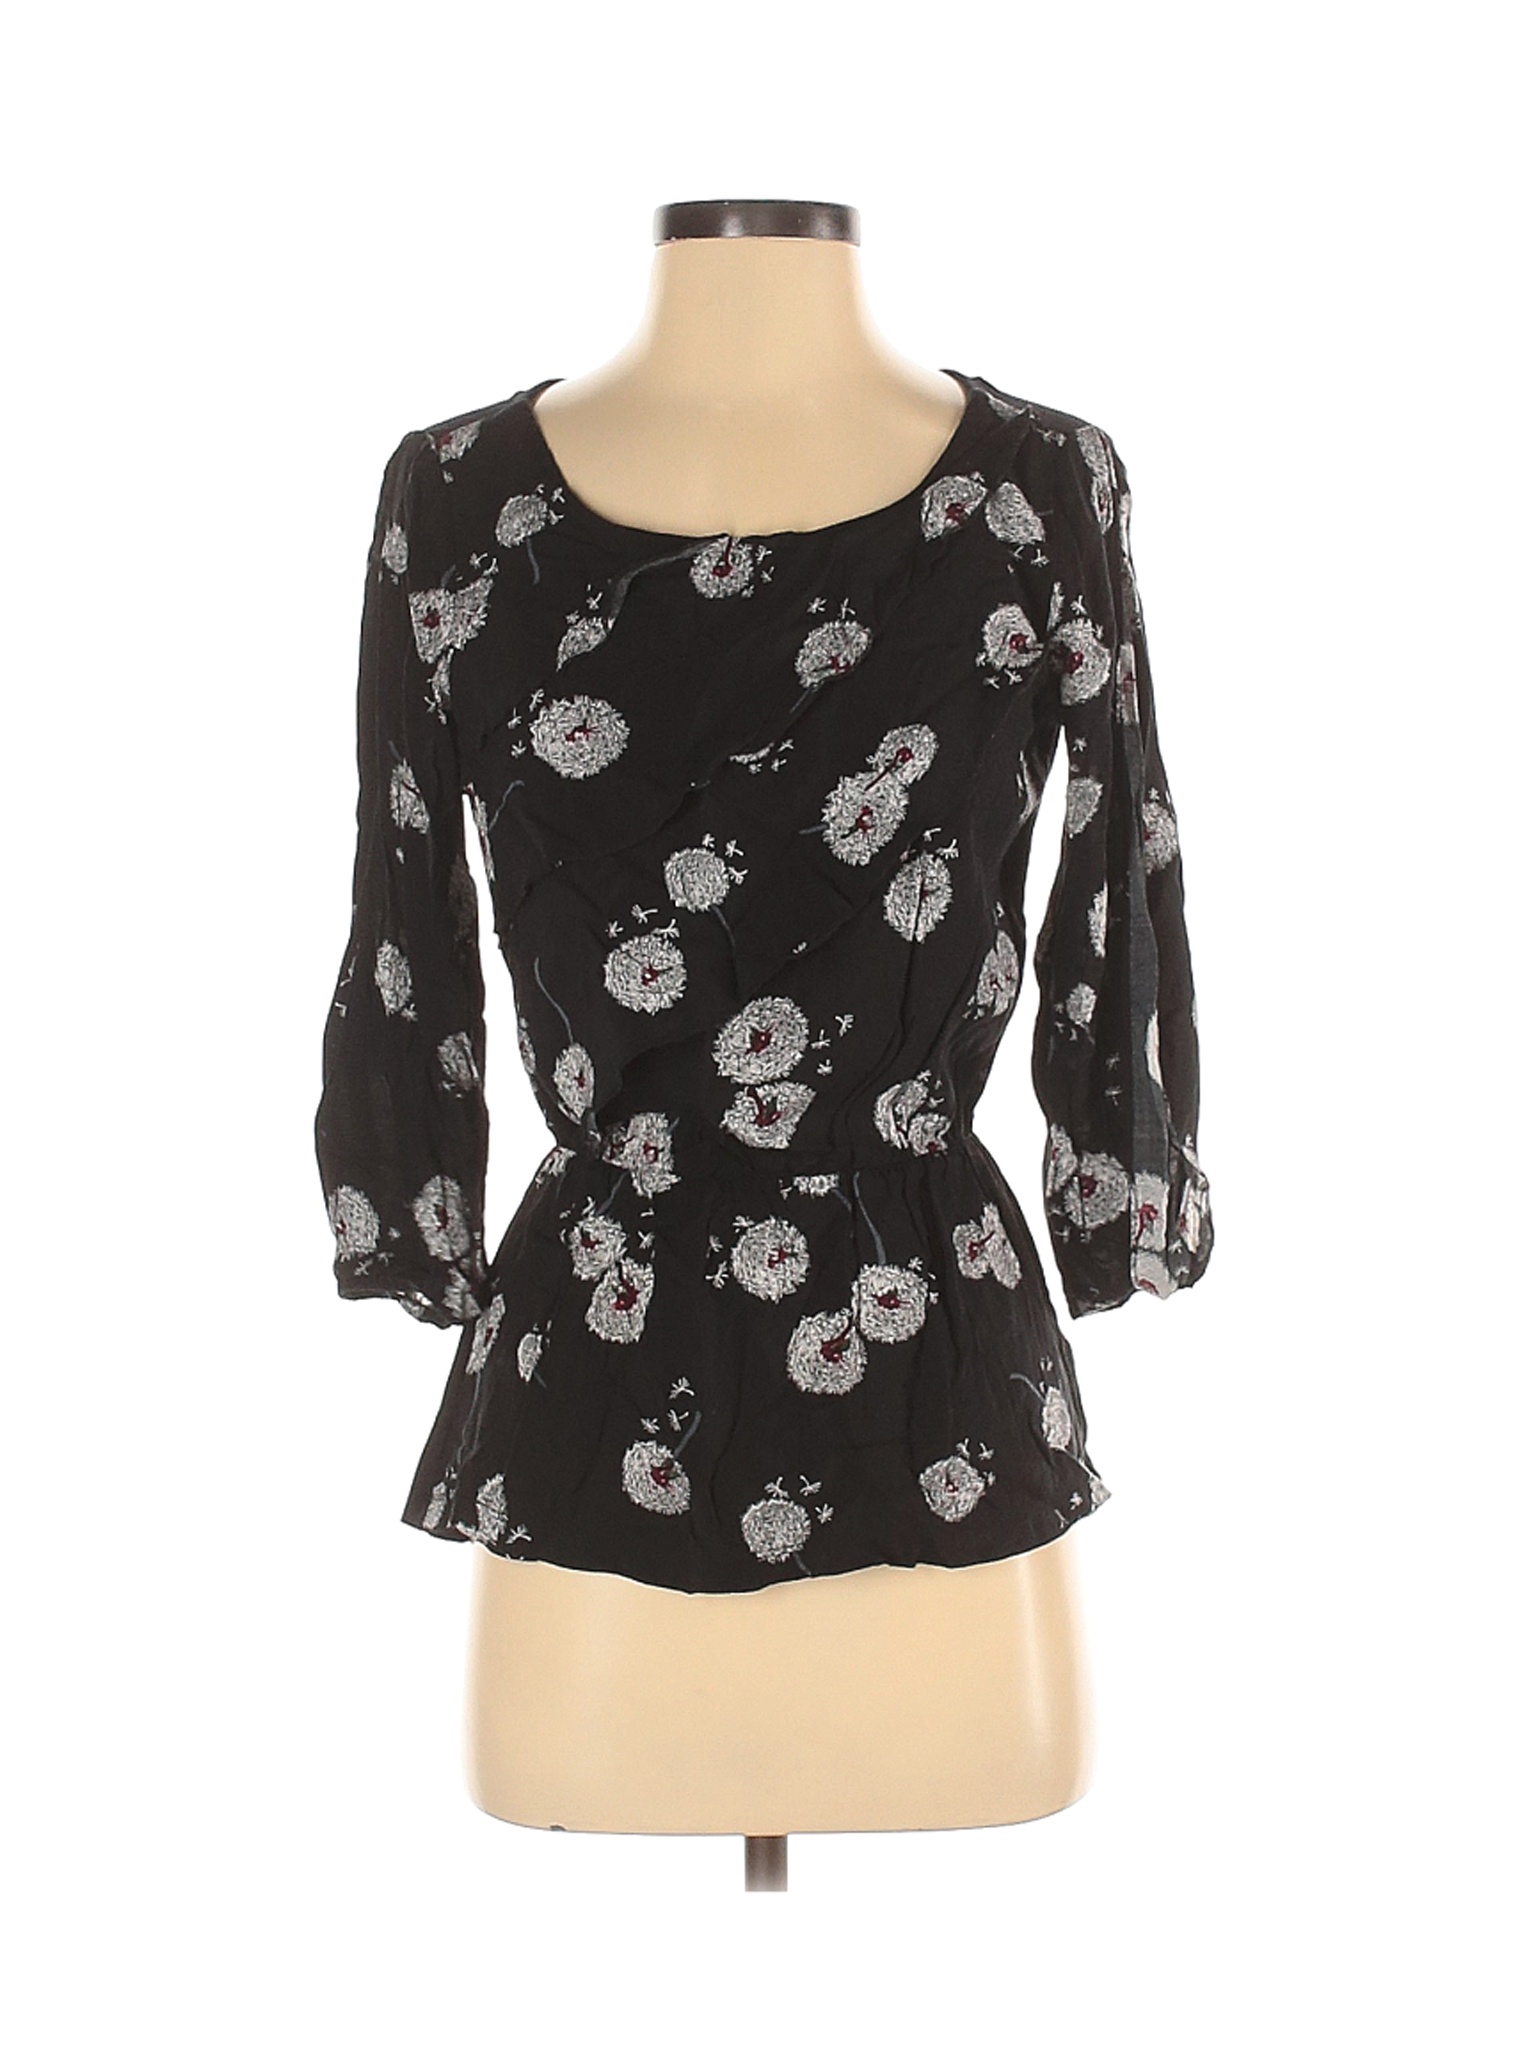 Deletta Women Black Long Sleeve Blouse XS | eBay